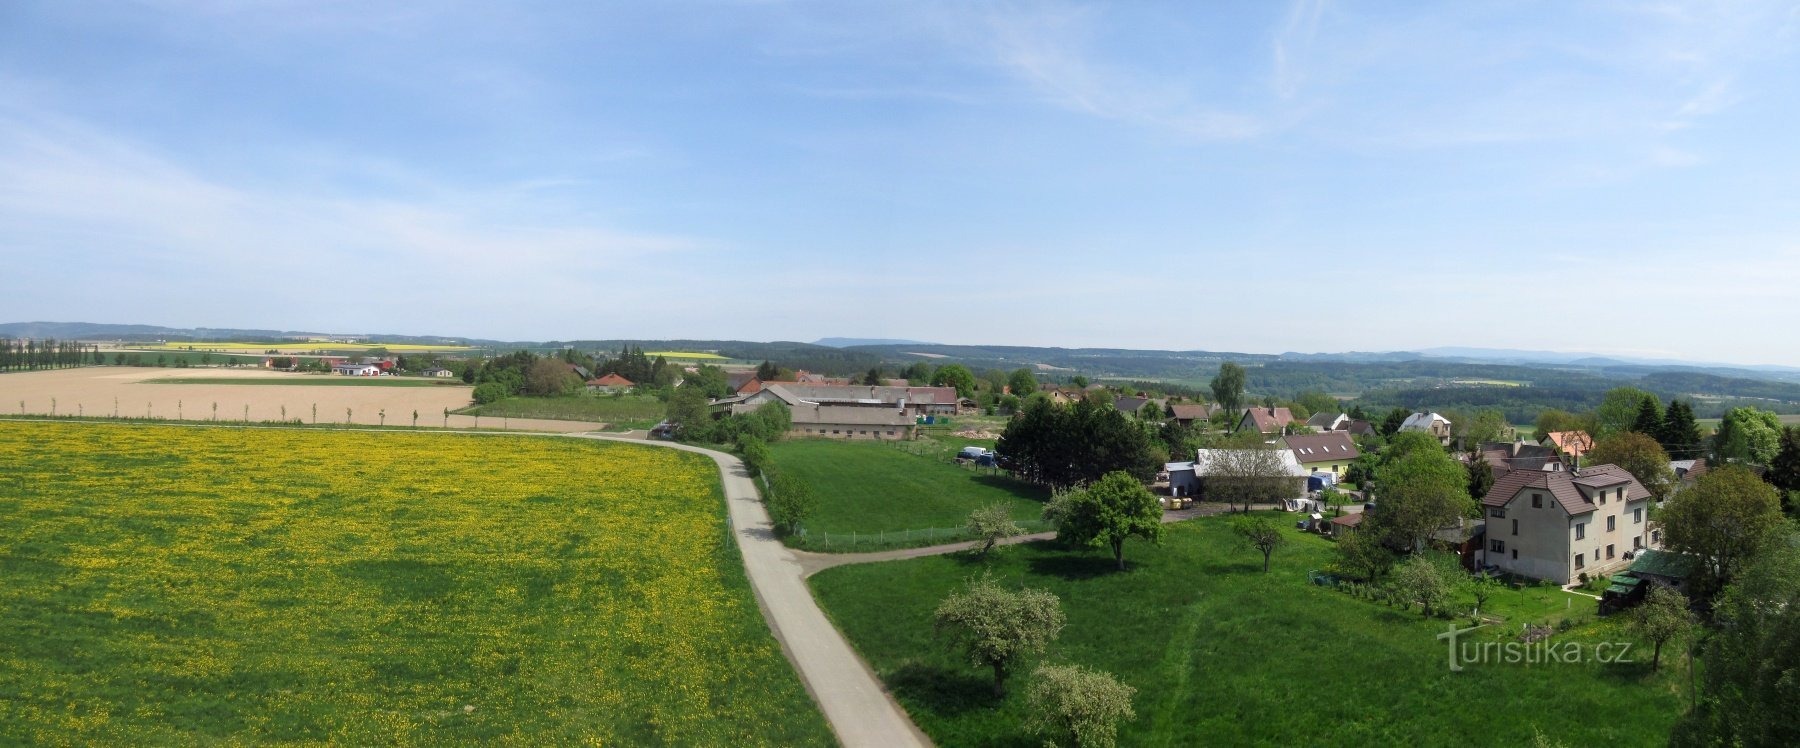 Žernov——村庄和瞭望塔